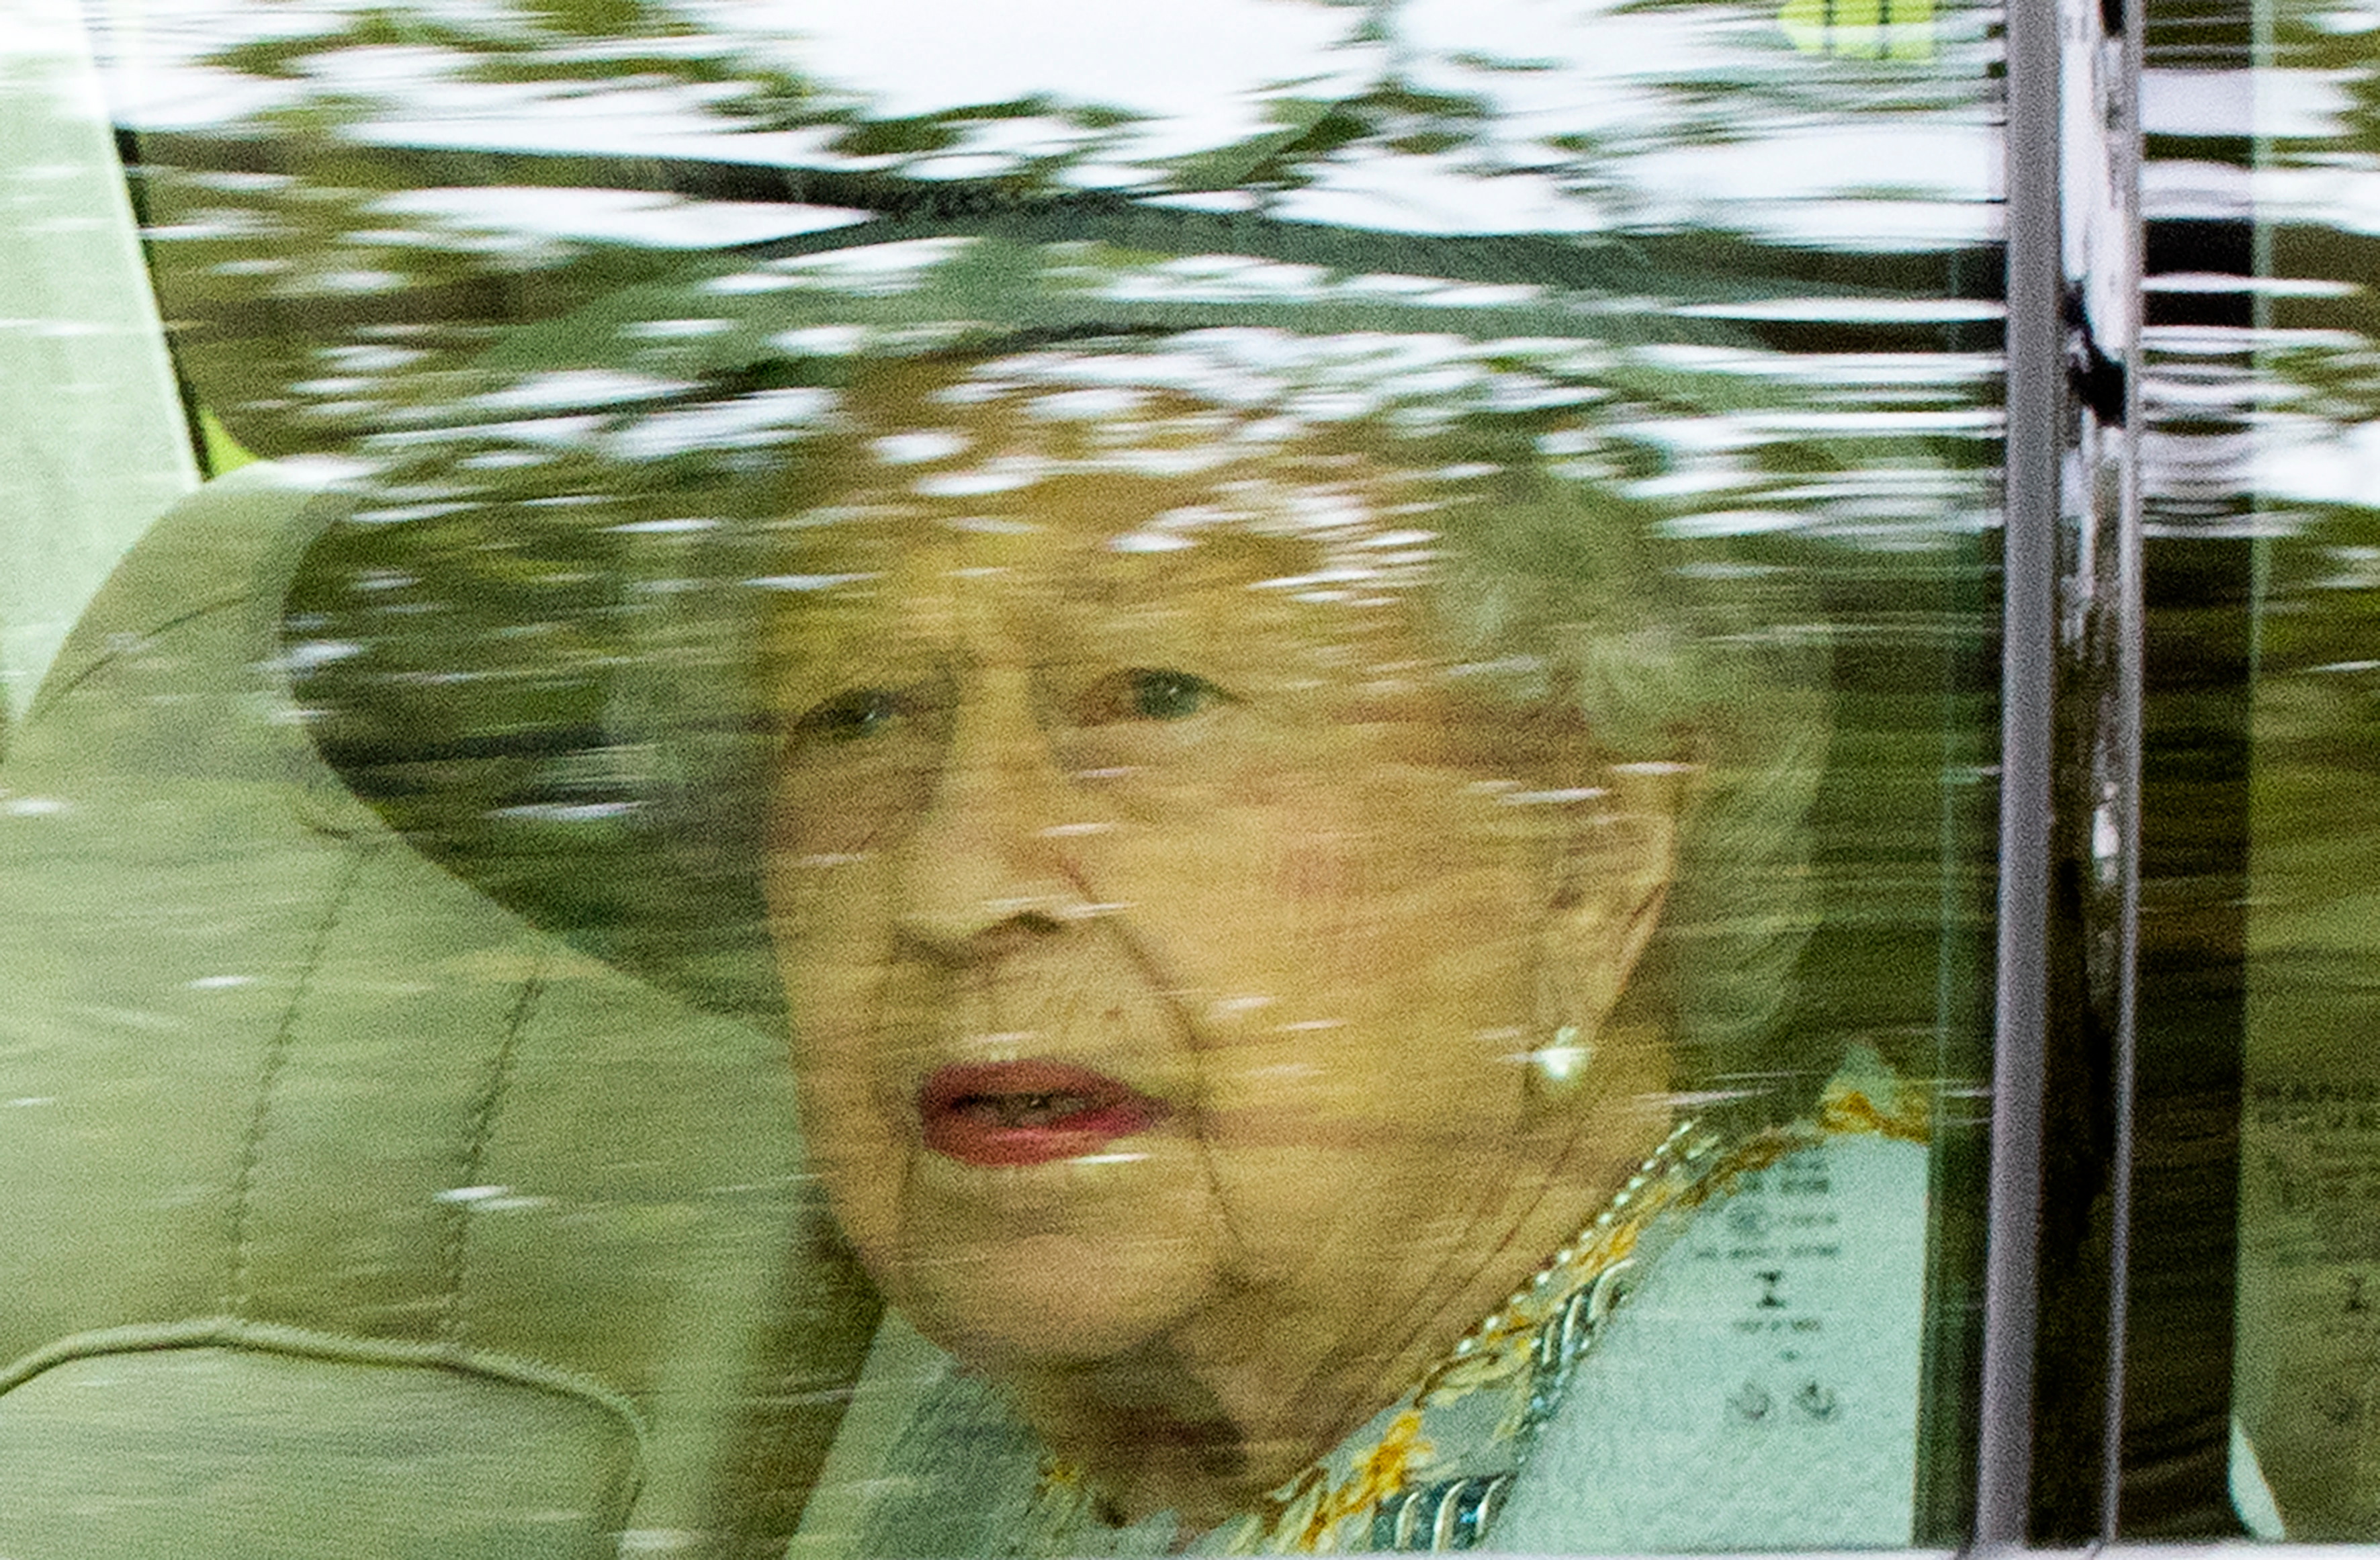 La Reina Isabel II volverá a asistir a un acto público tras varias semanas de reposo